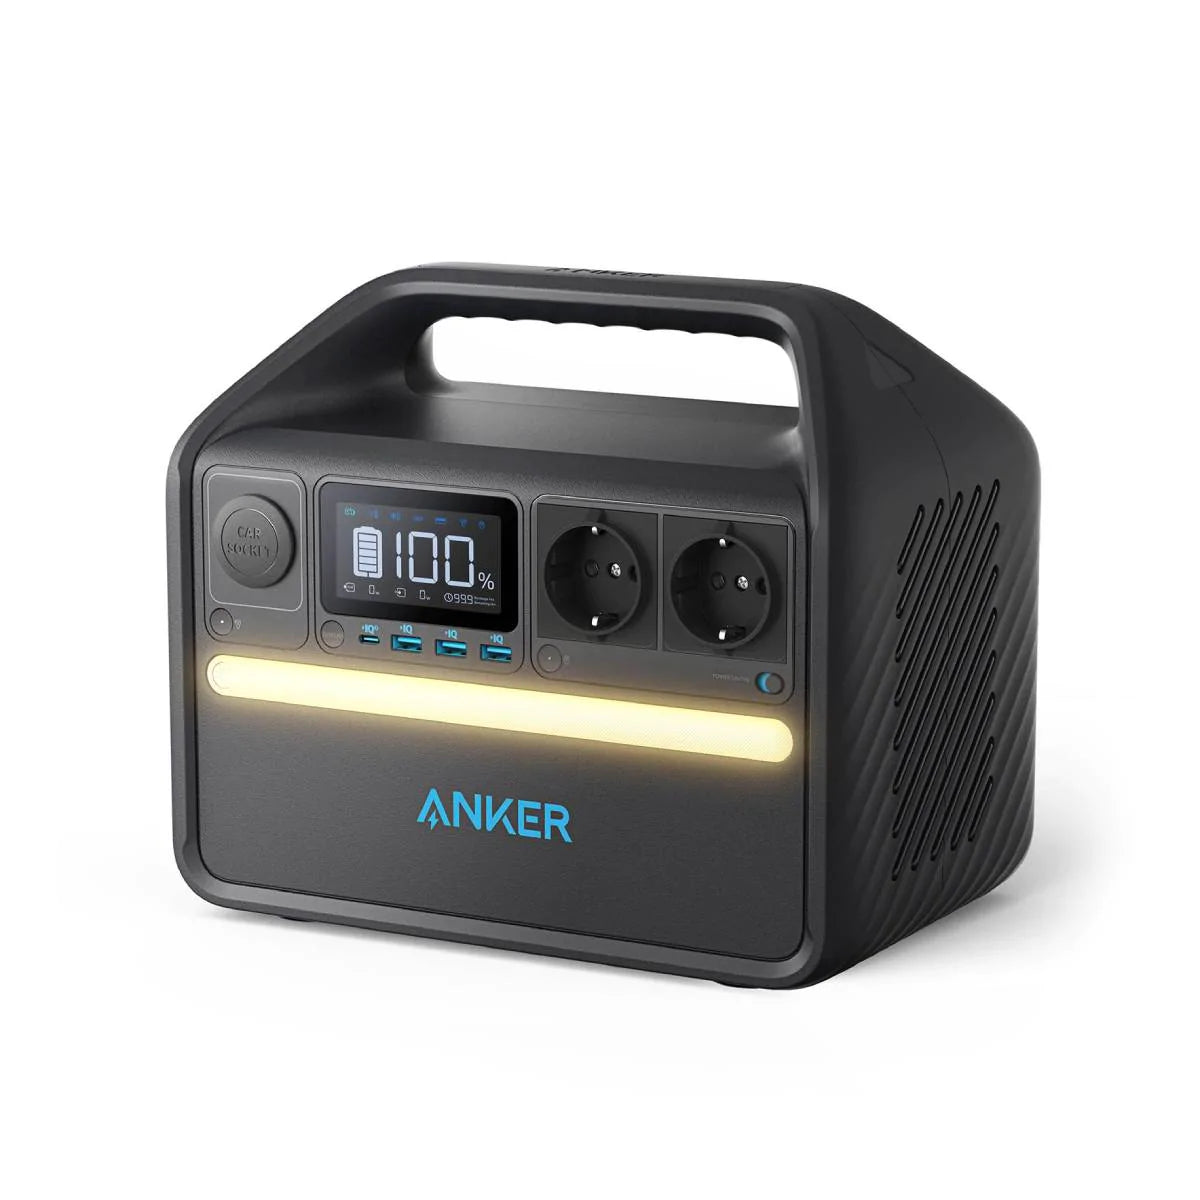 Anker 535 ( 512 Wh ) - Acumulador de energia portátil - Smartify - Casa Inteligente - Smart Home - Domotica - Casas Inteligentes